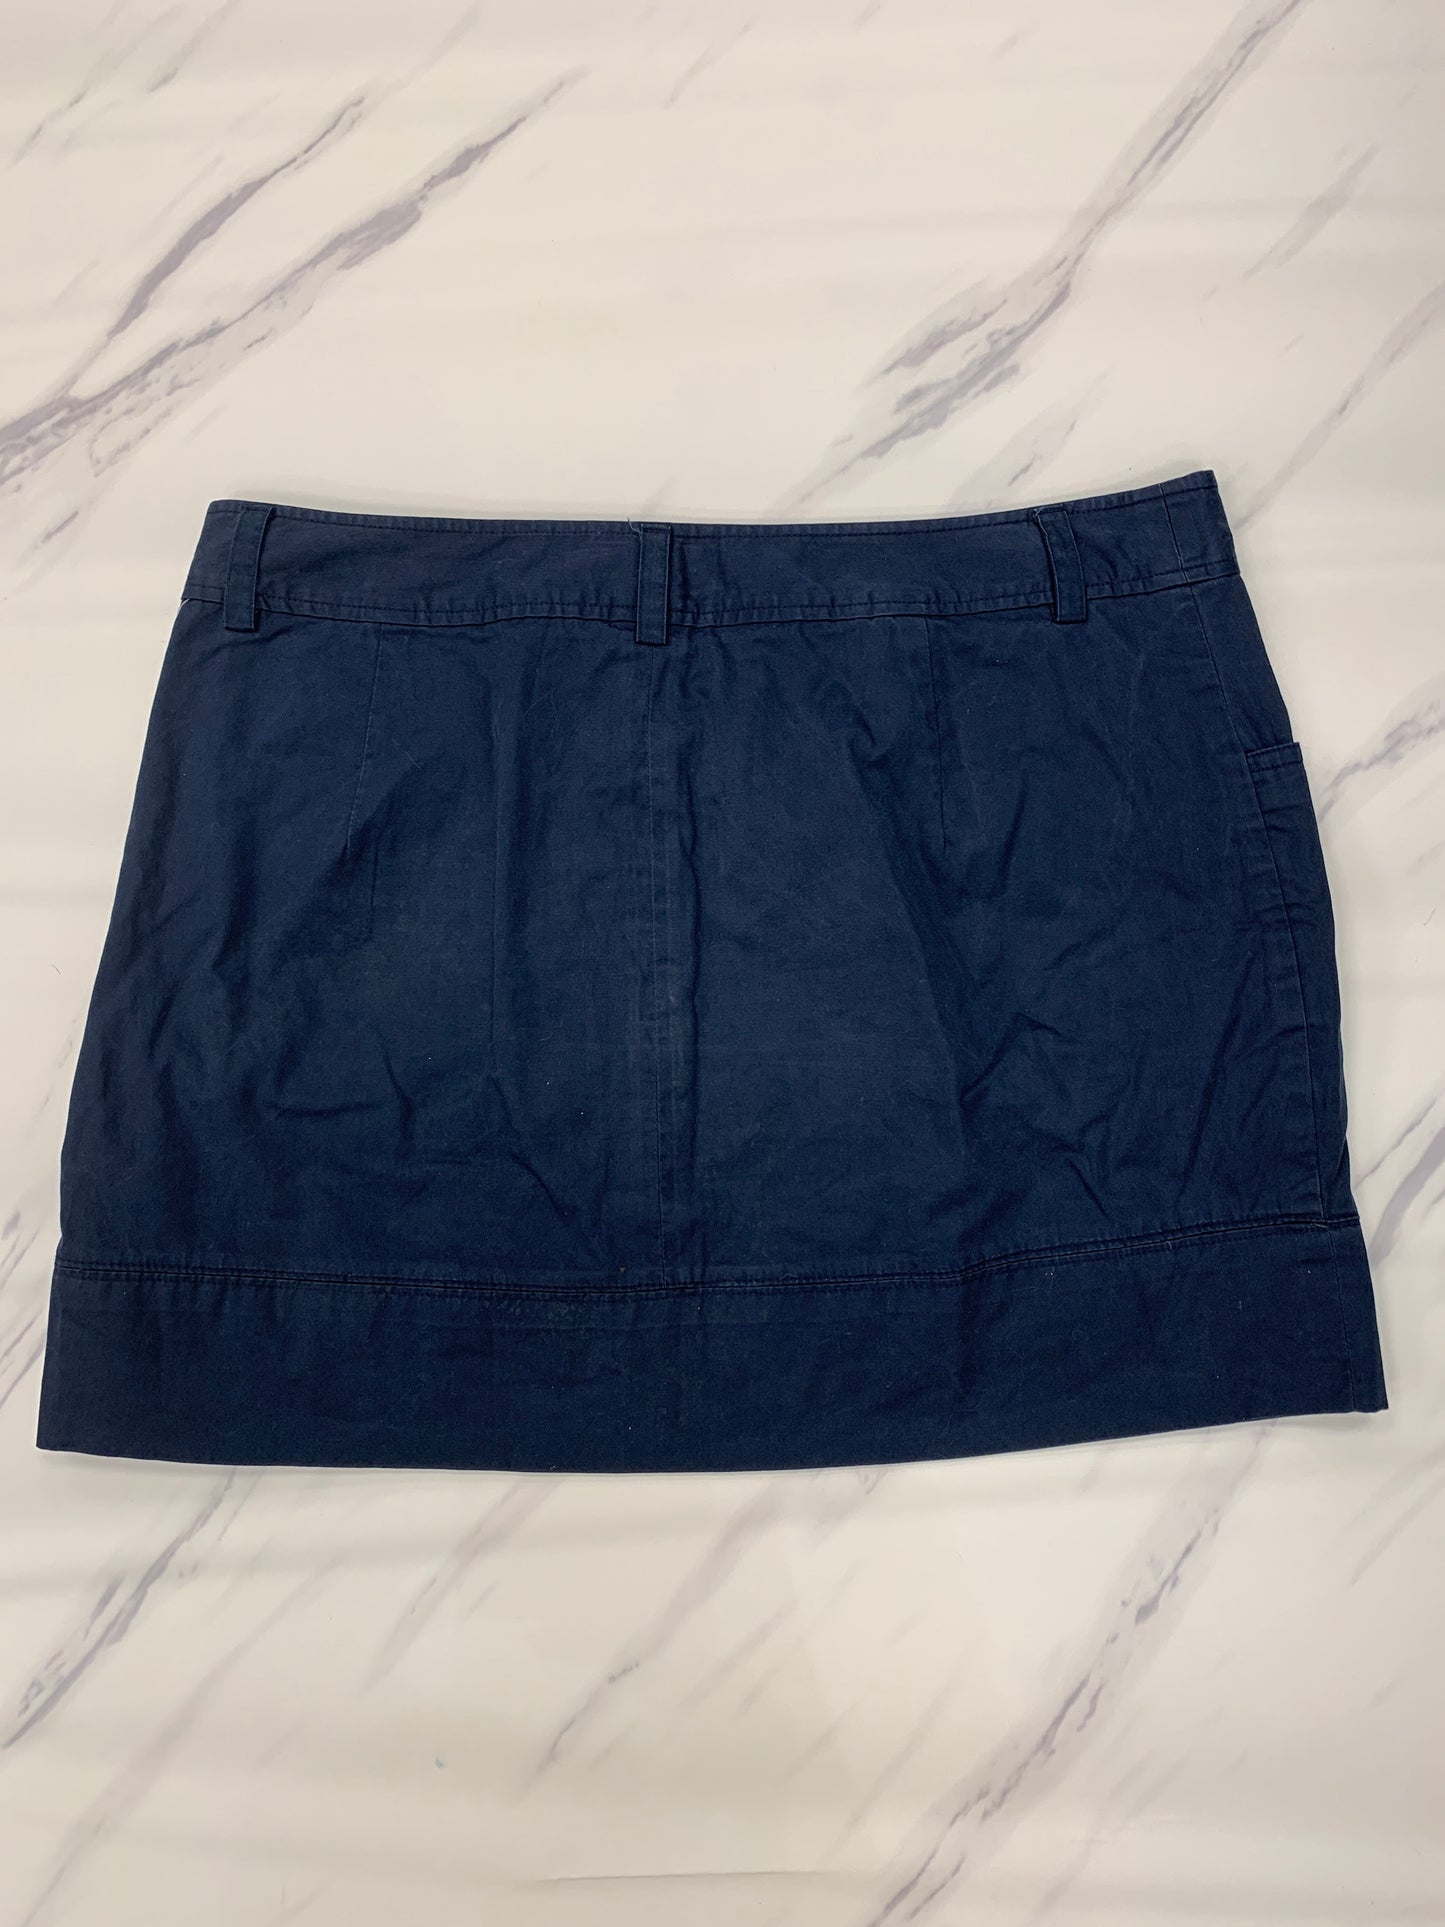 Skirt Mini & Short By Vineyard Vines  Size: 8